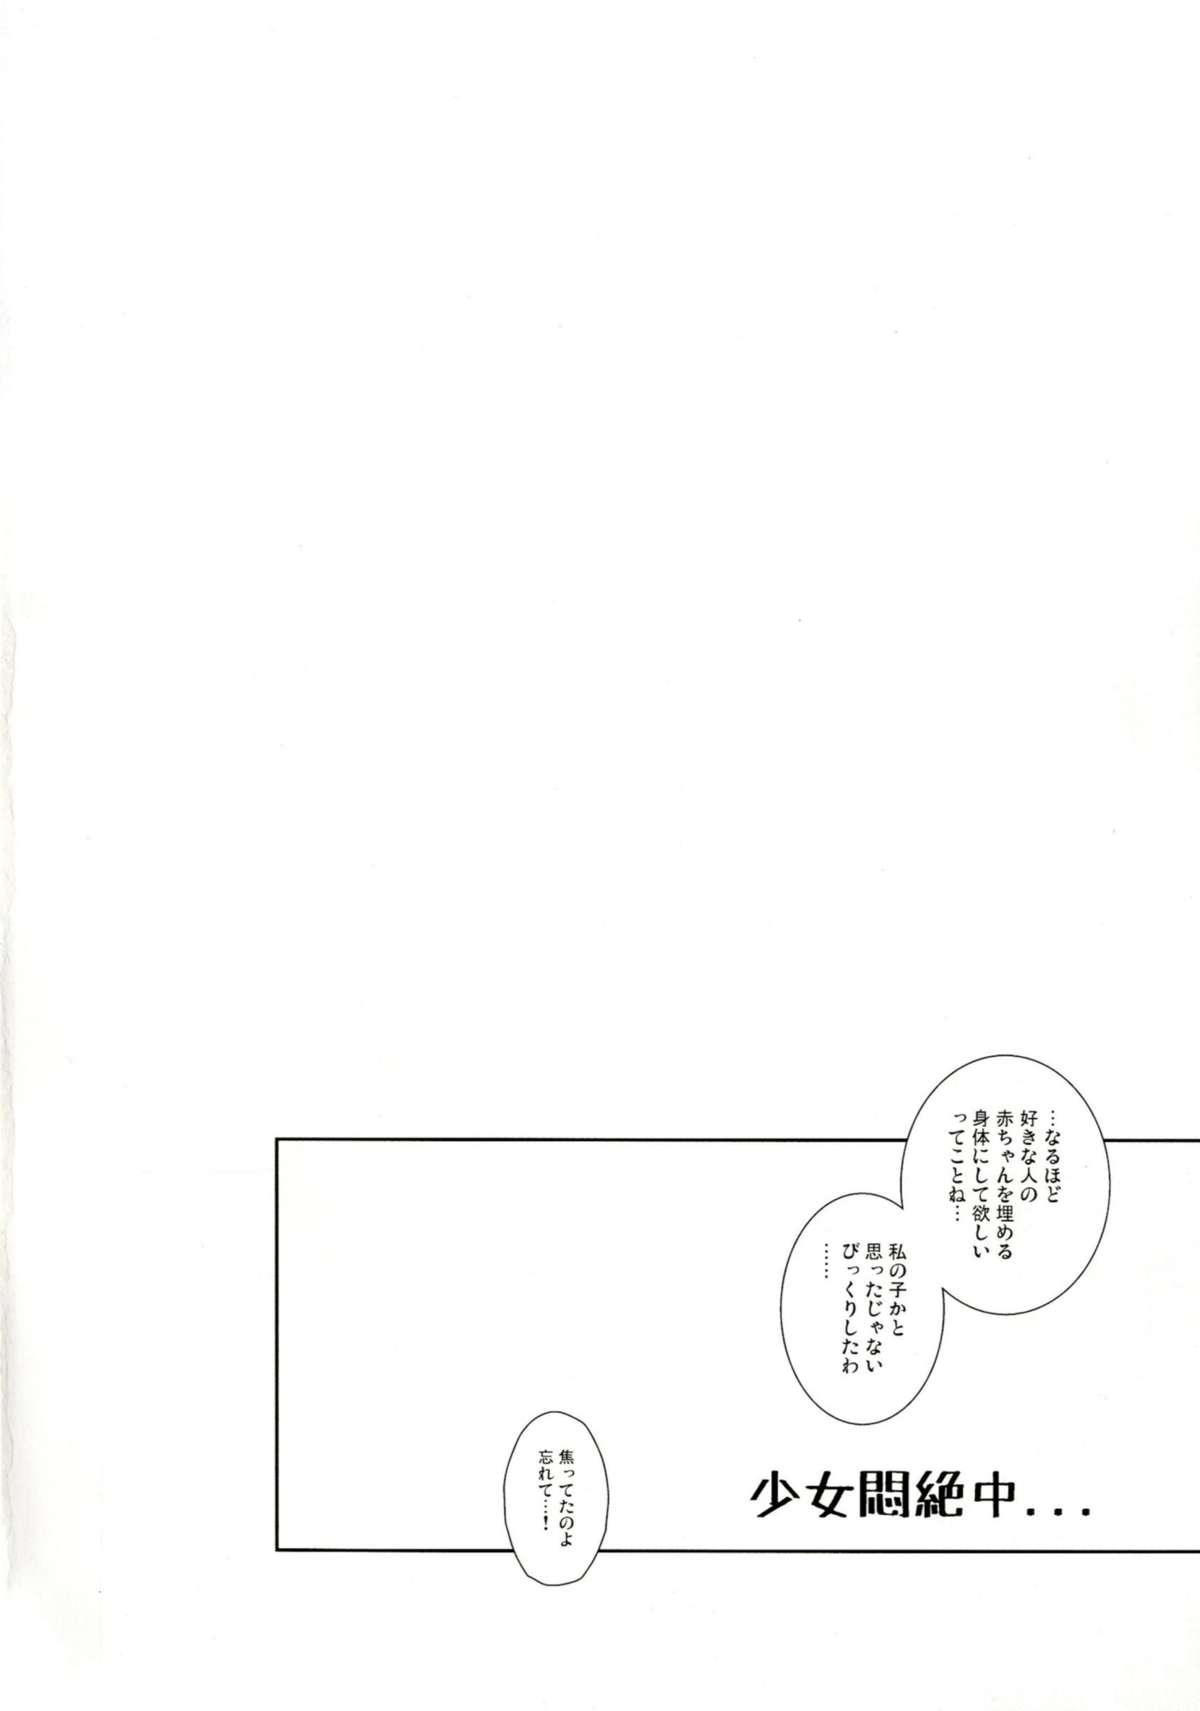 Swinger Kagehinata wa Tokedashite - Touhou project Twinks - Page 4